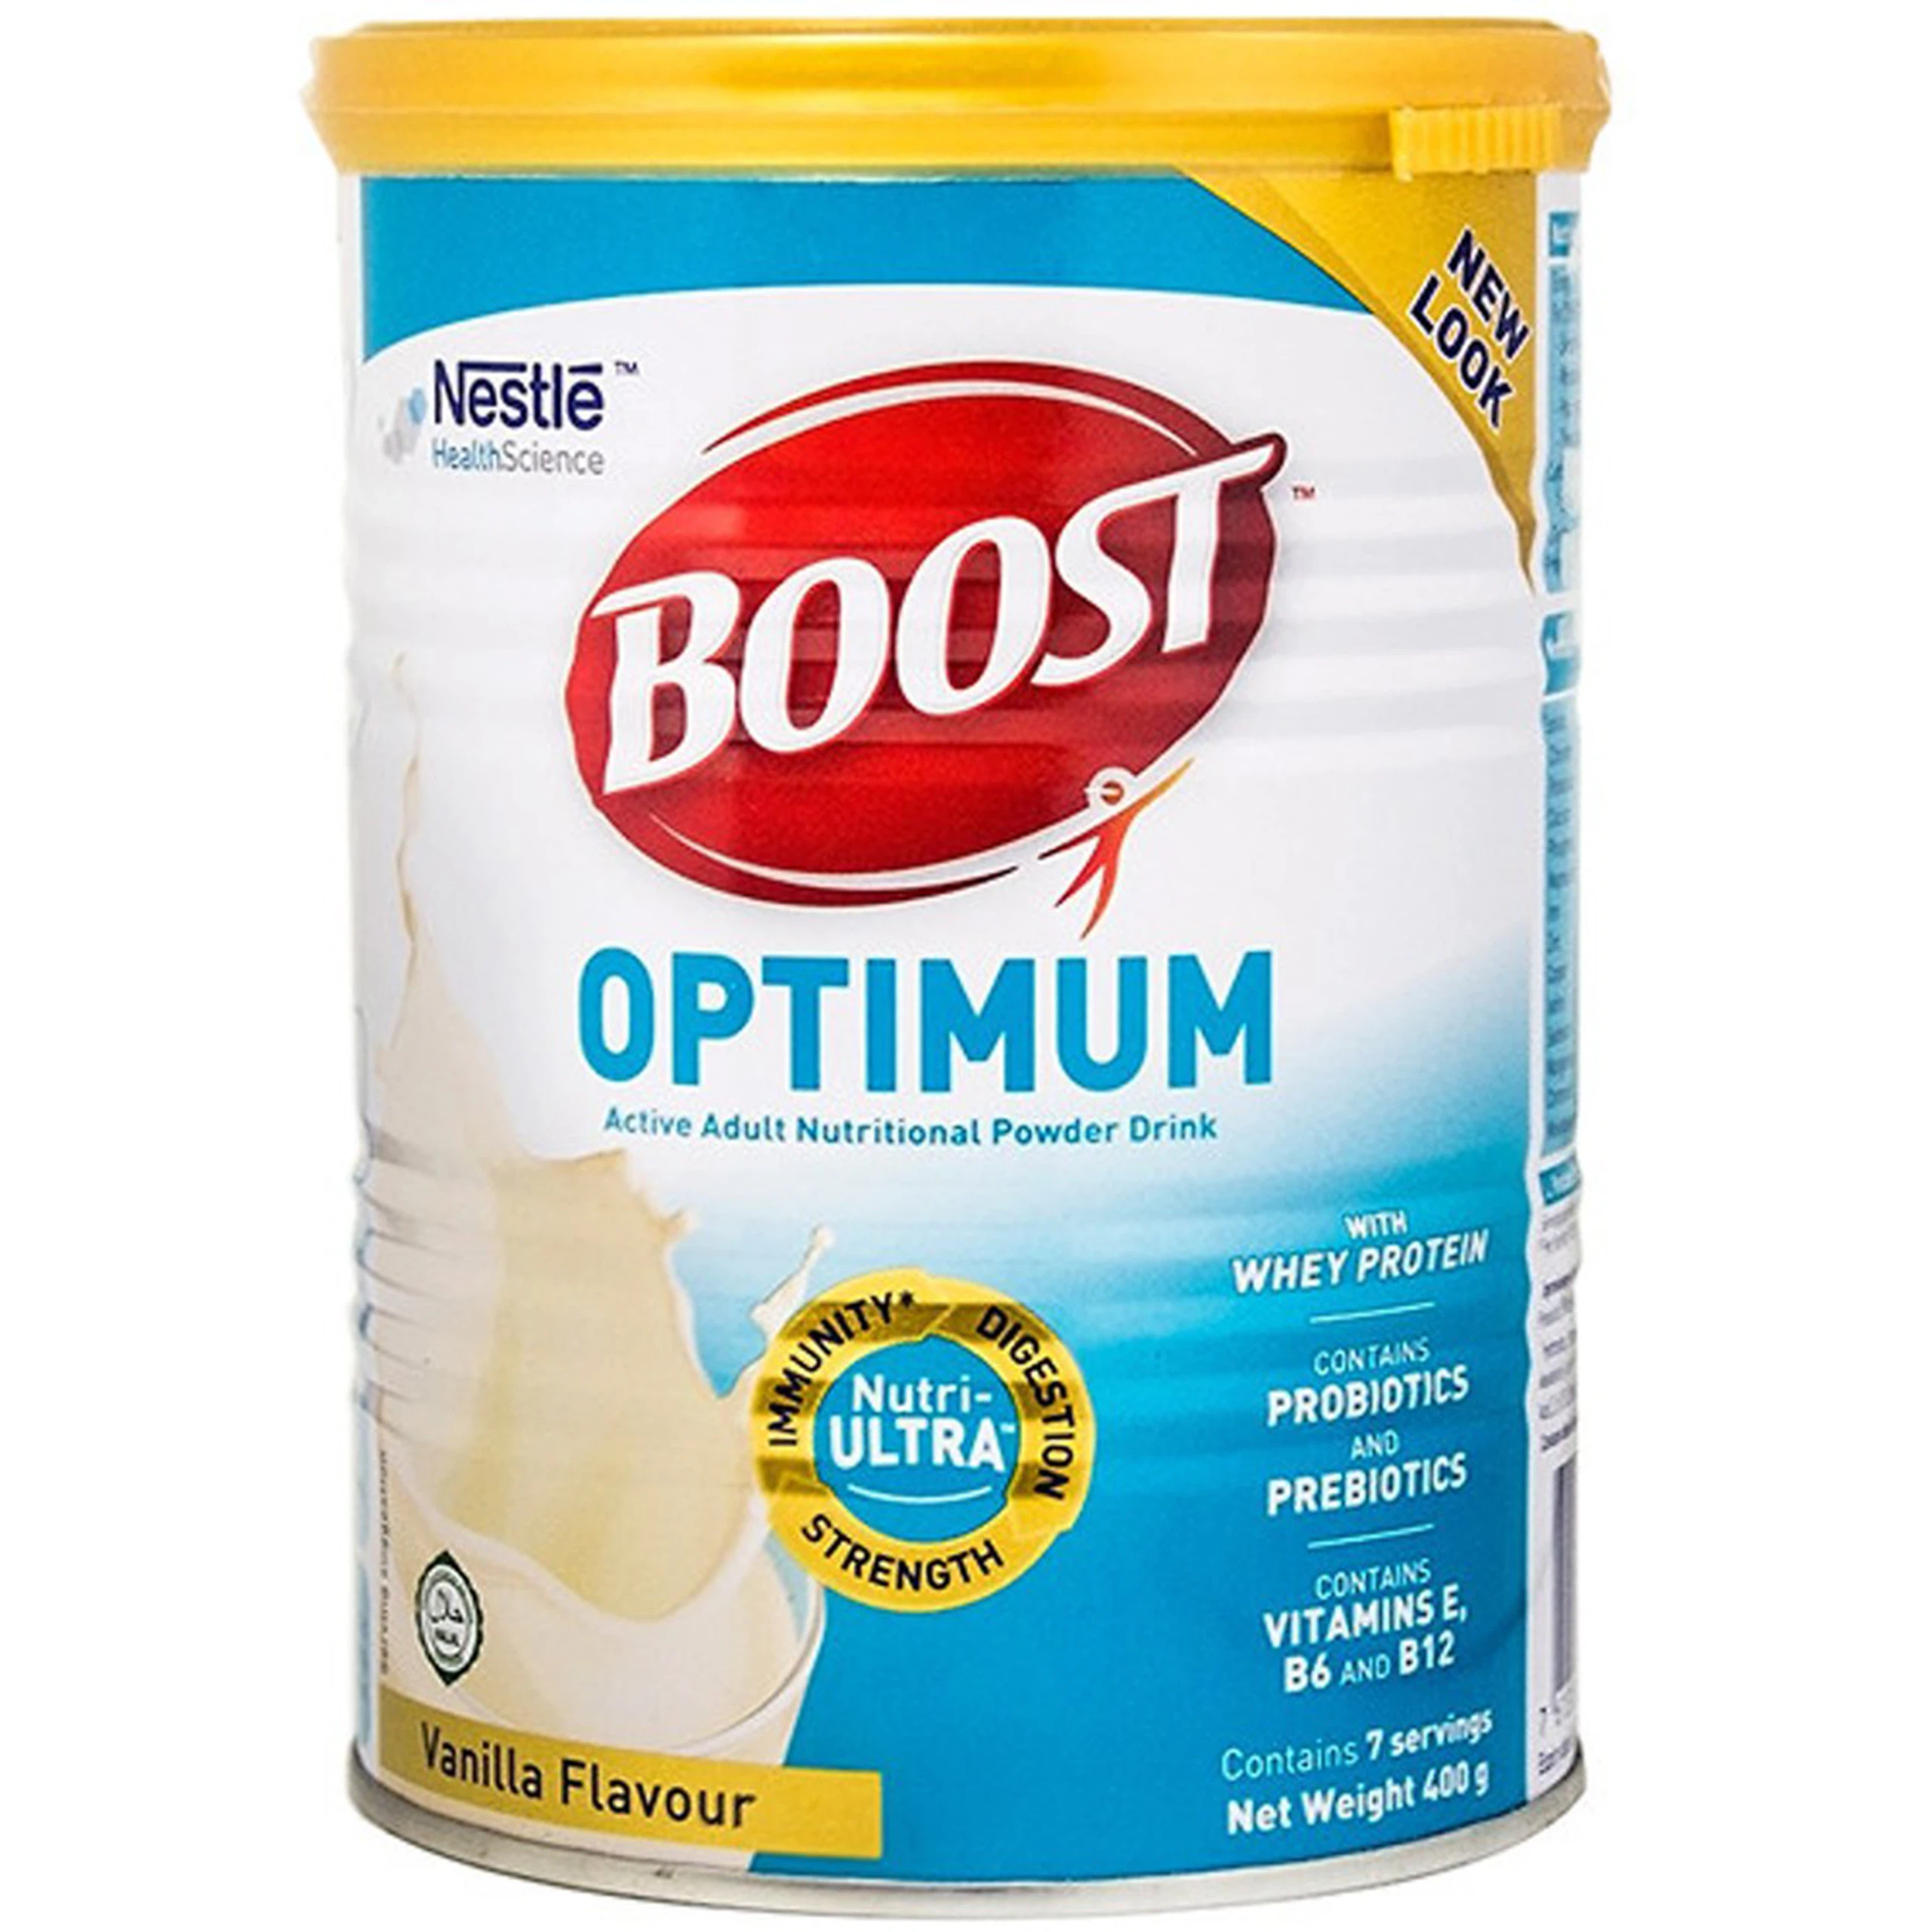 Sữa Boost Optimum Nestlé bổ sung vitamin, khoáng chất cho cơ thể (400g)